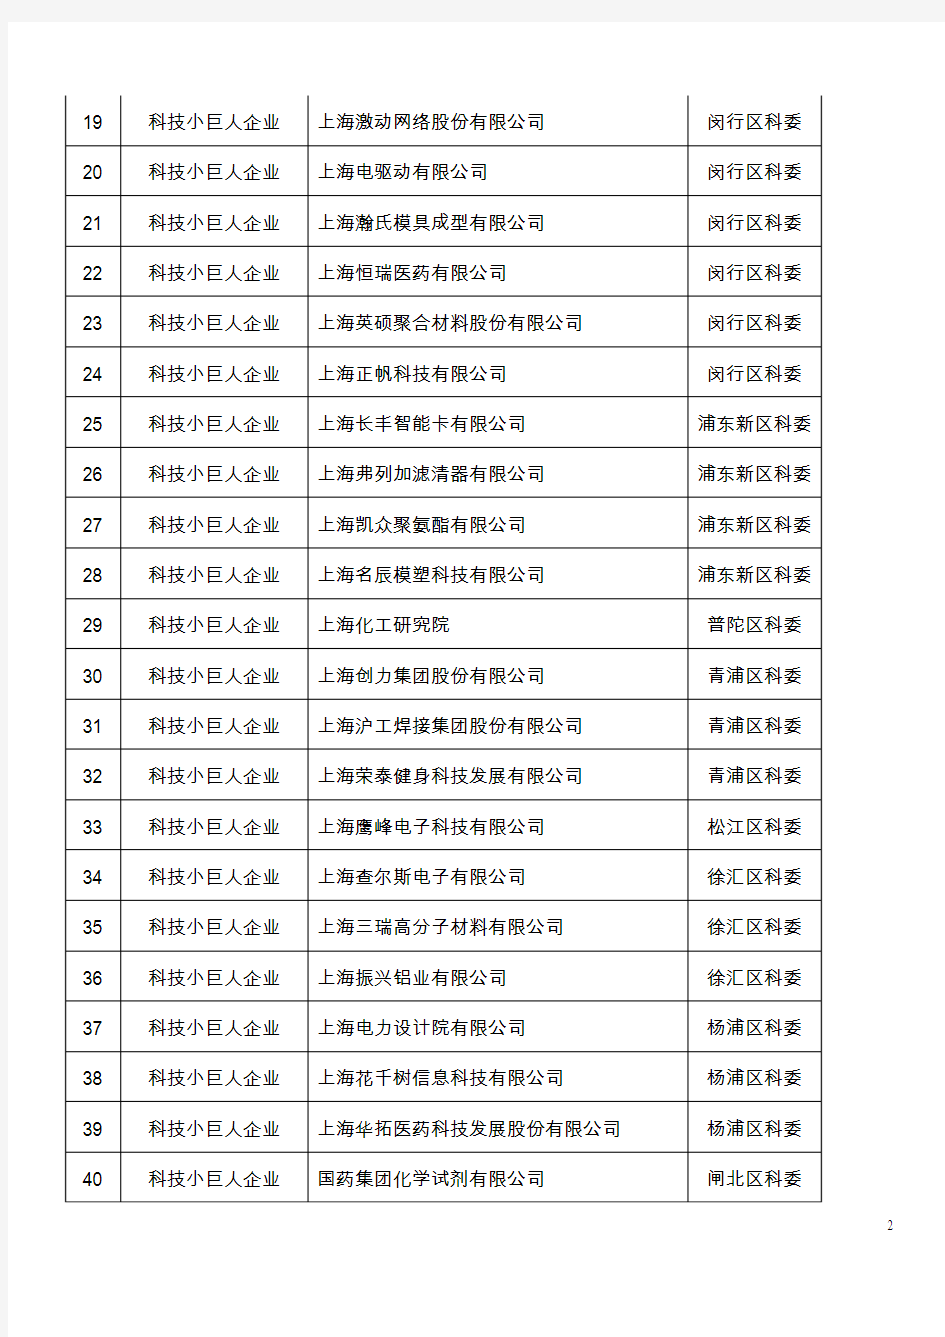 2012 年度上海市科技小巨人工程拟立项项目名单